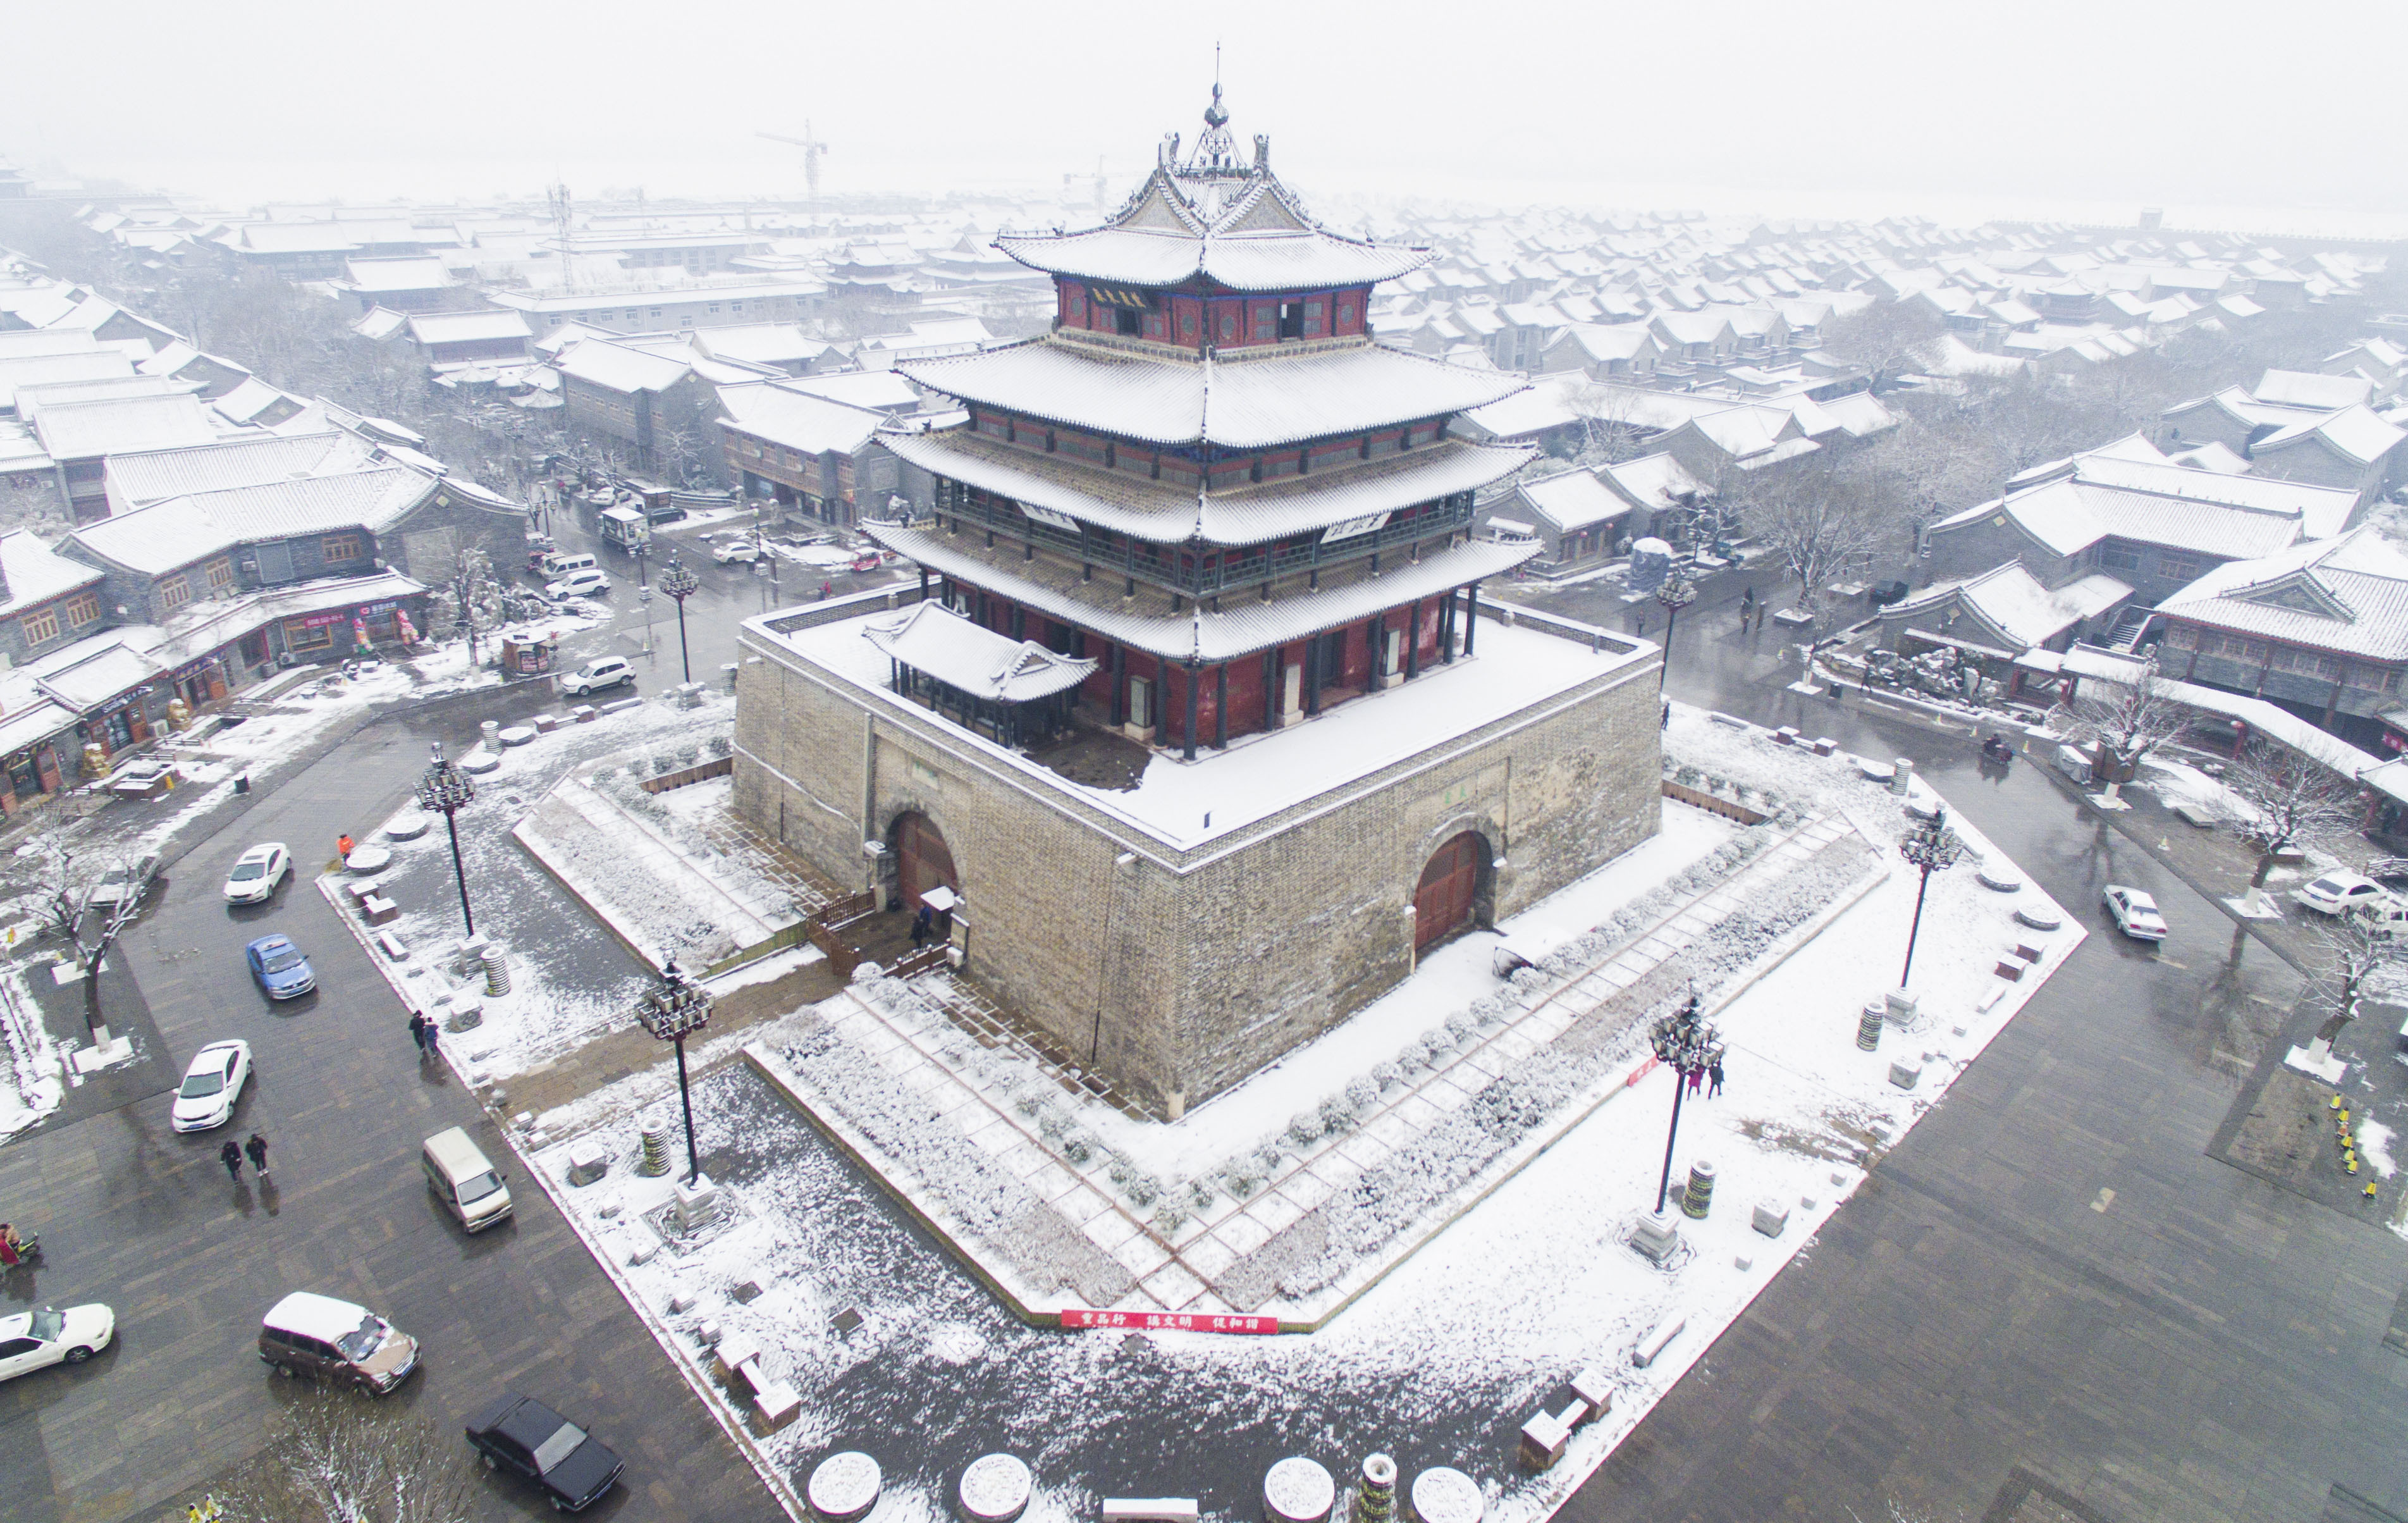 聊城古城雪景图片